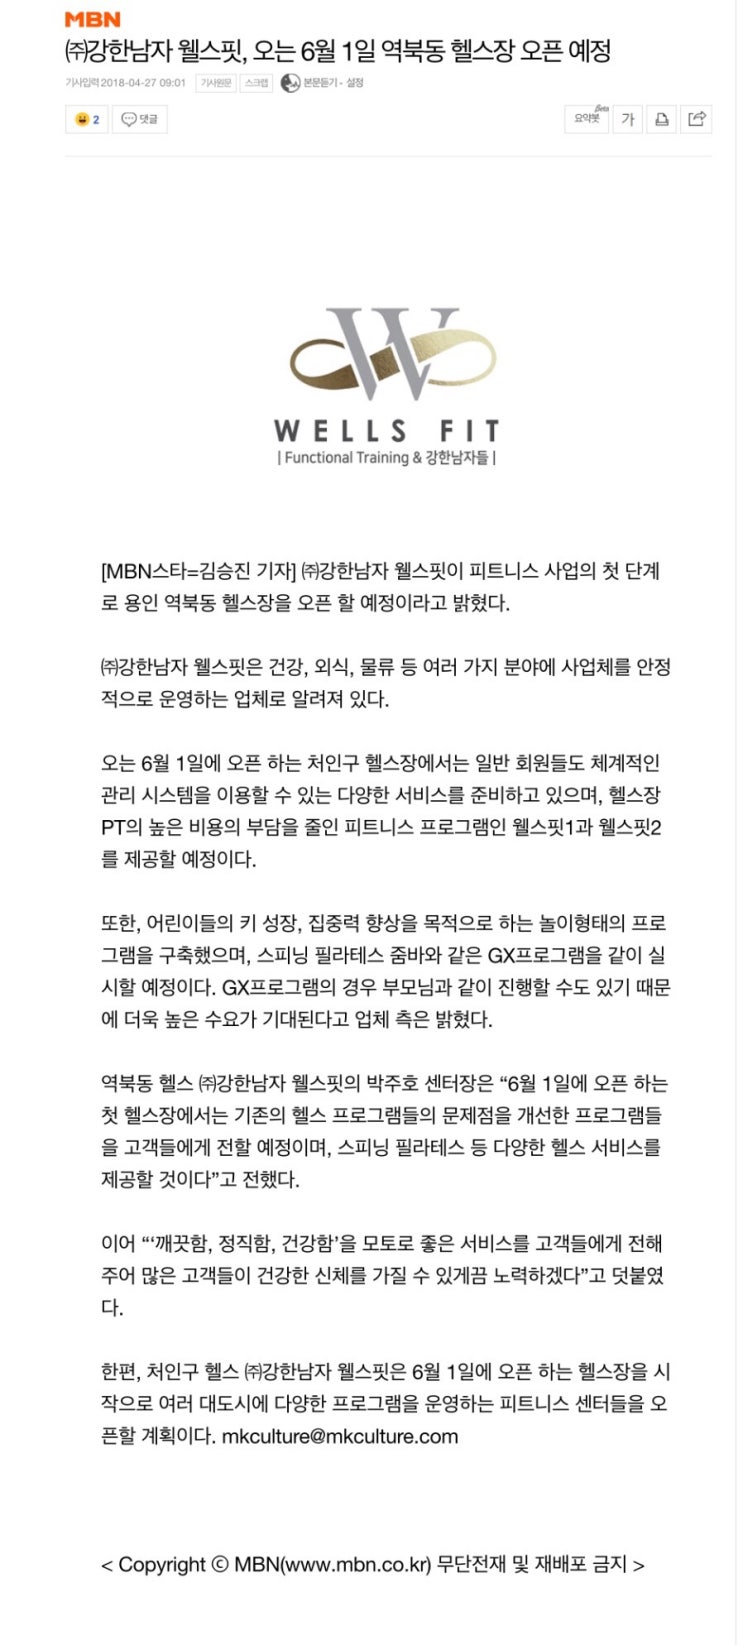 (주)강한남자 웰스핏, 오는 6월 1일 역북동 헬스장 오픈 예정